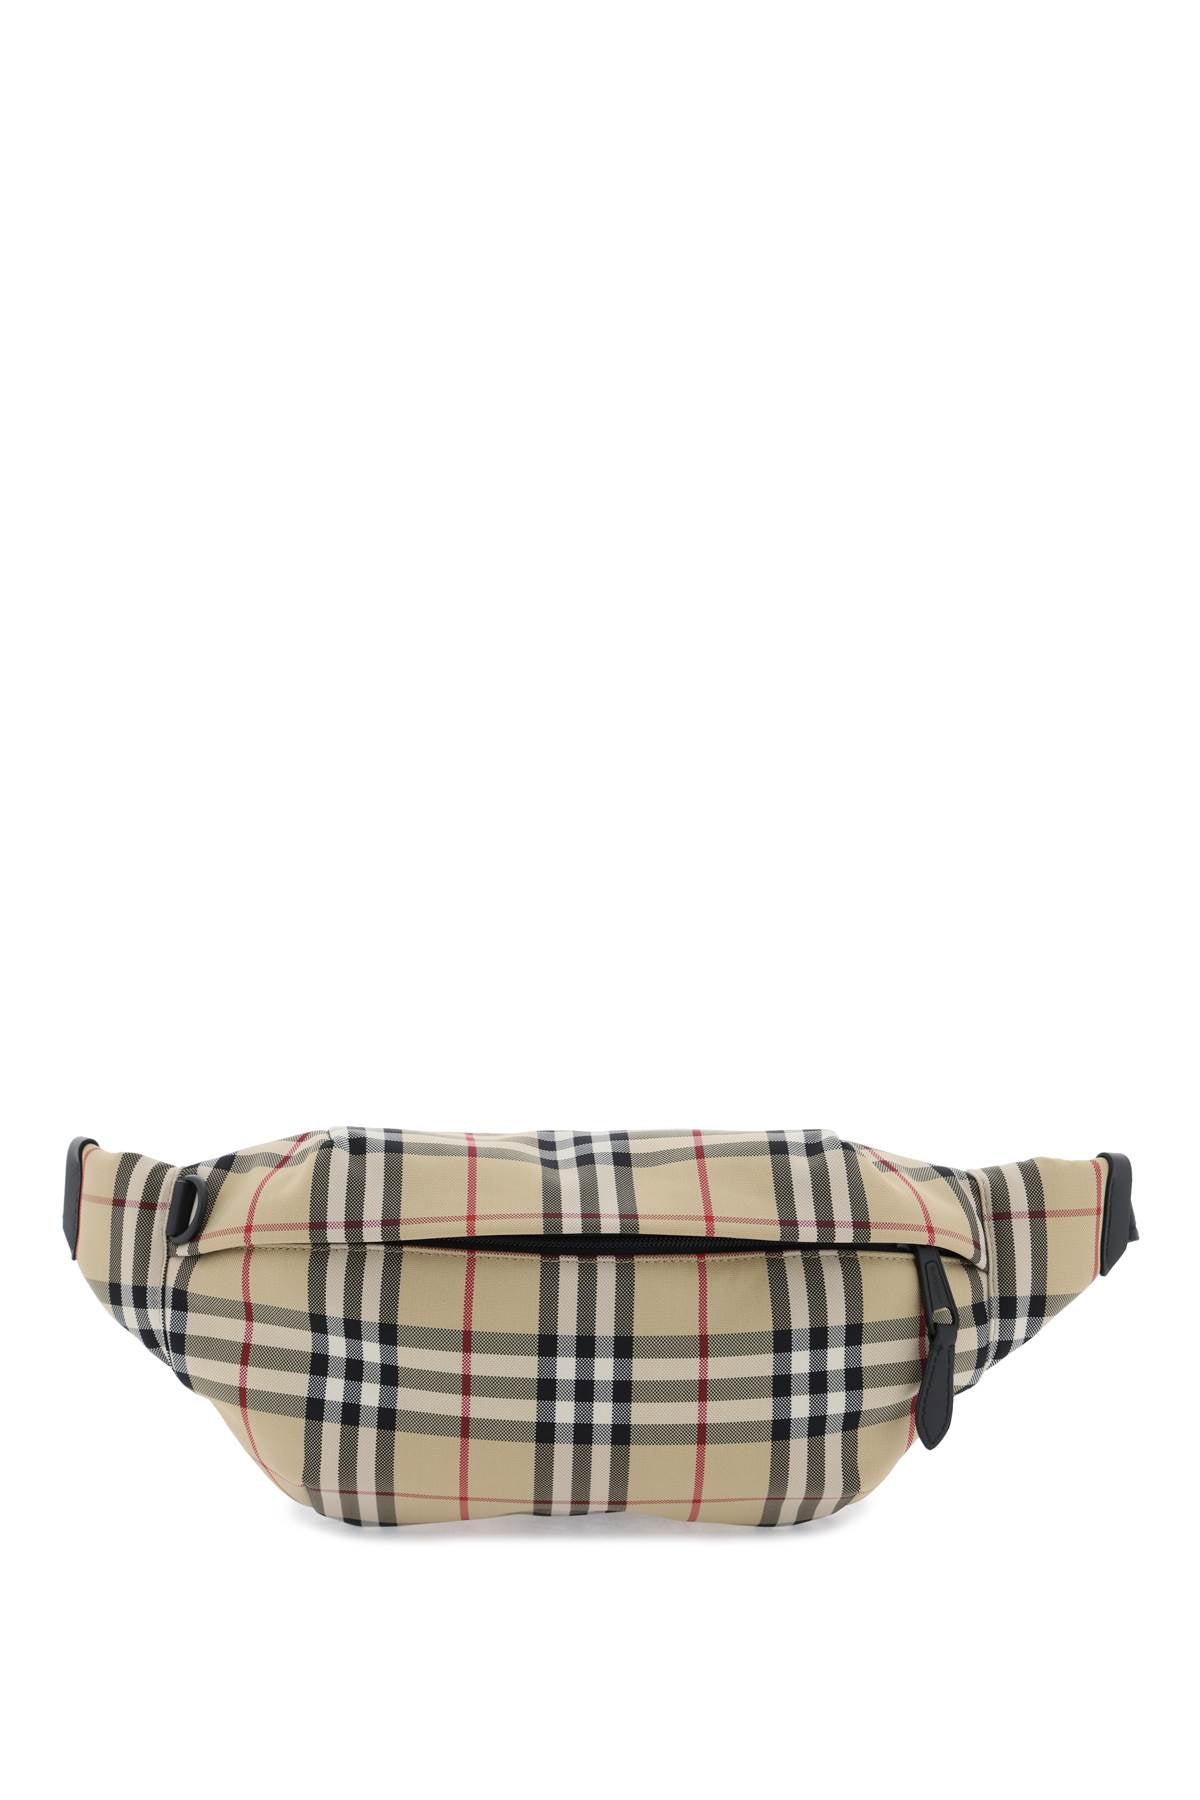 Túi đeo hông Burberry với họa tiết kinh điển dành cho nam giới màu be